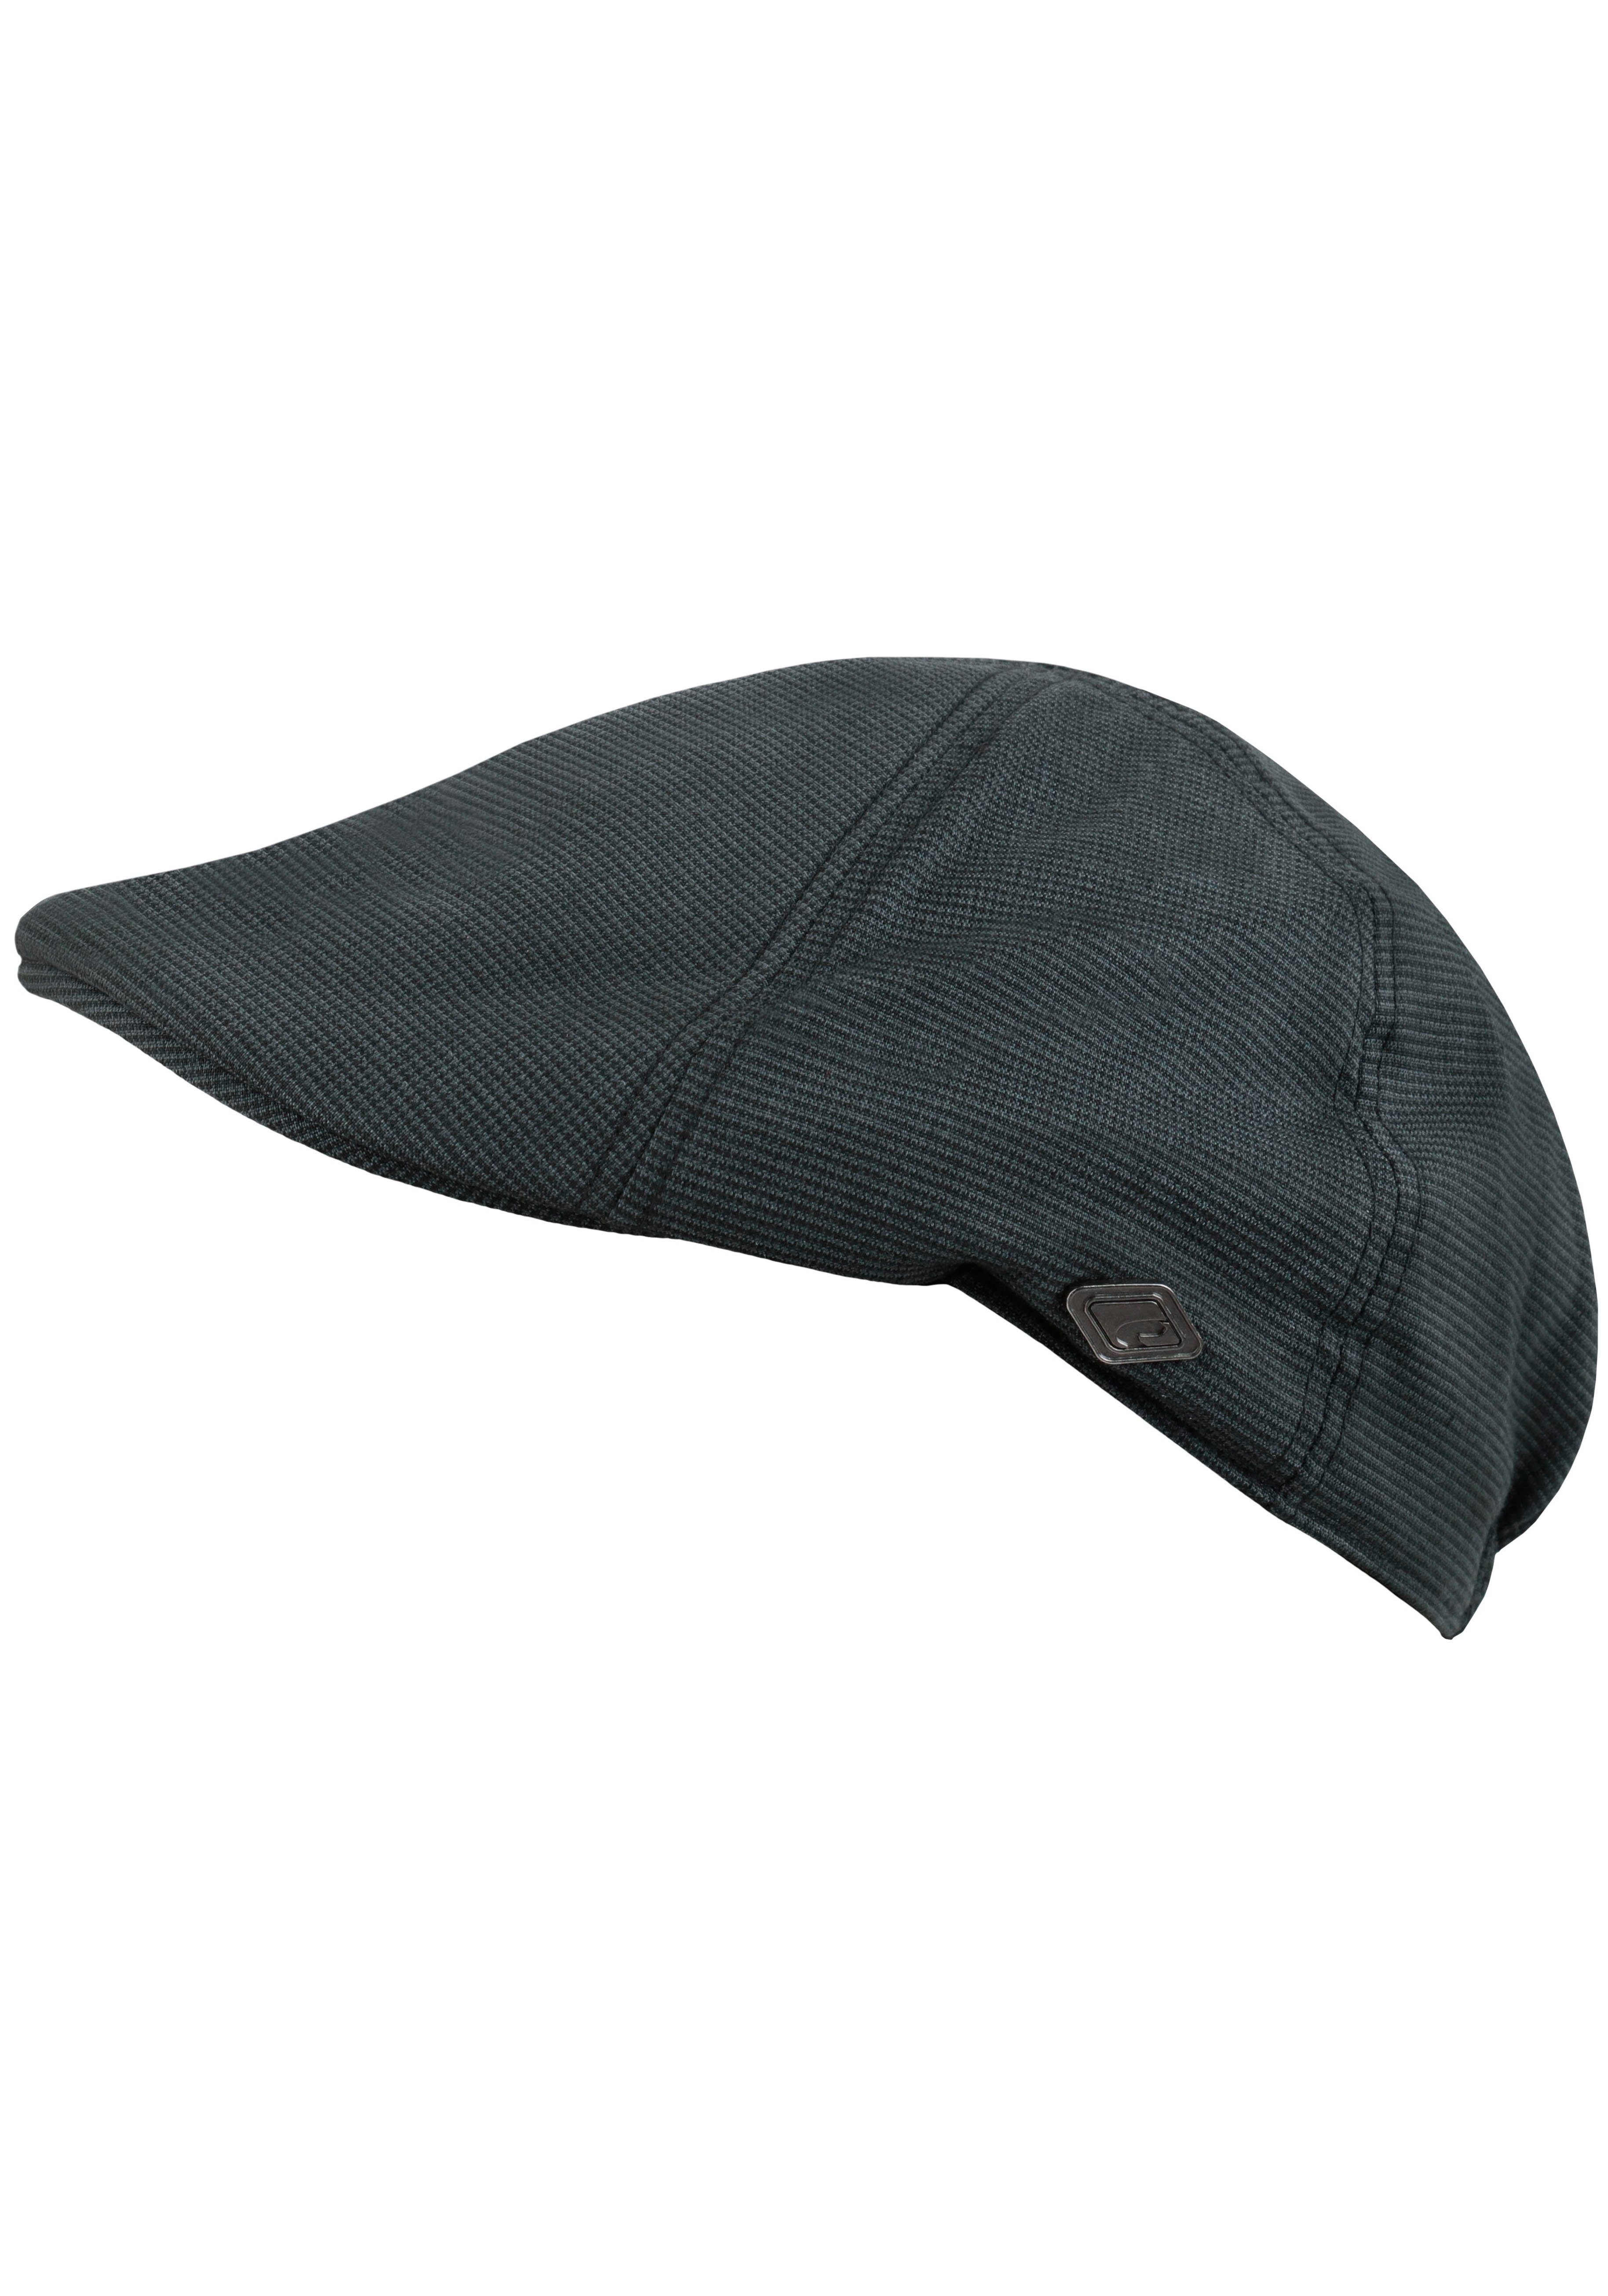 chillouts Schiebermütze Kyoto mit Karomuster grau-schwarz feinem Hat Cap Flat